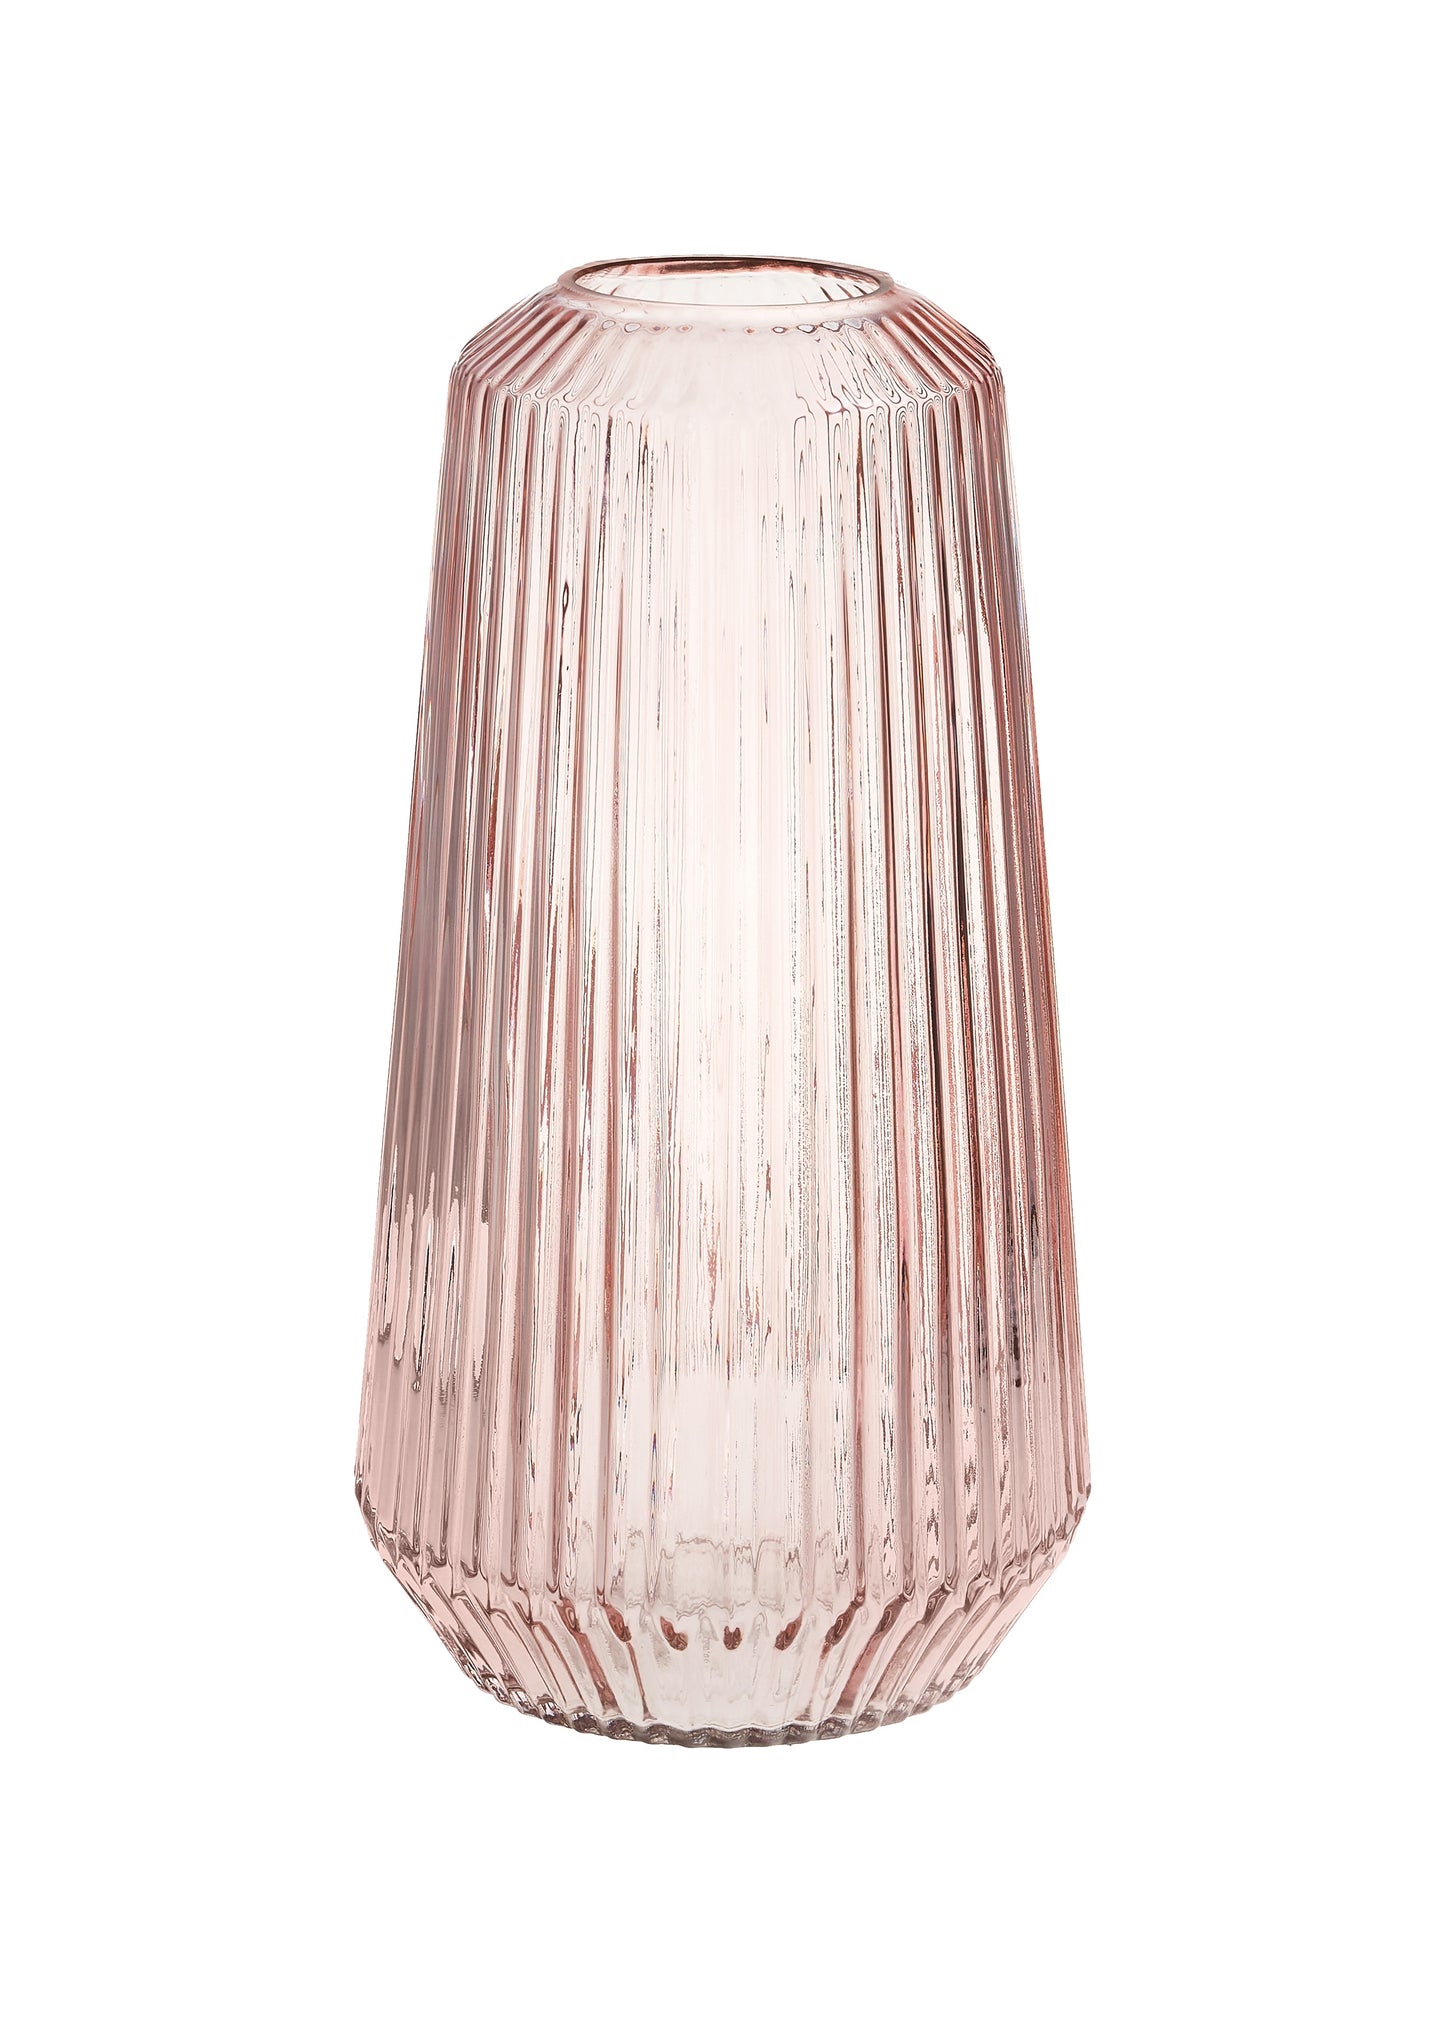 Nayan Glass Vase Blush LARGE